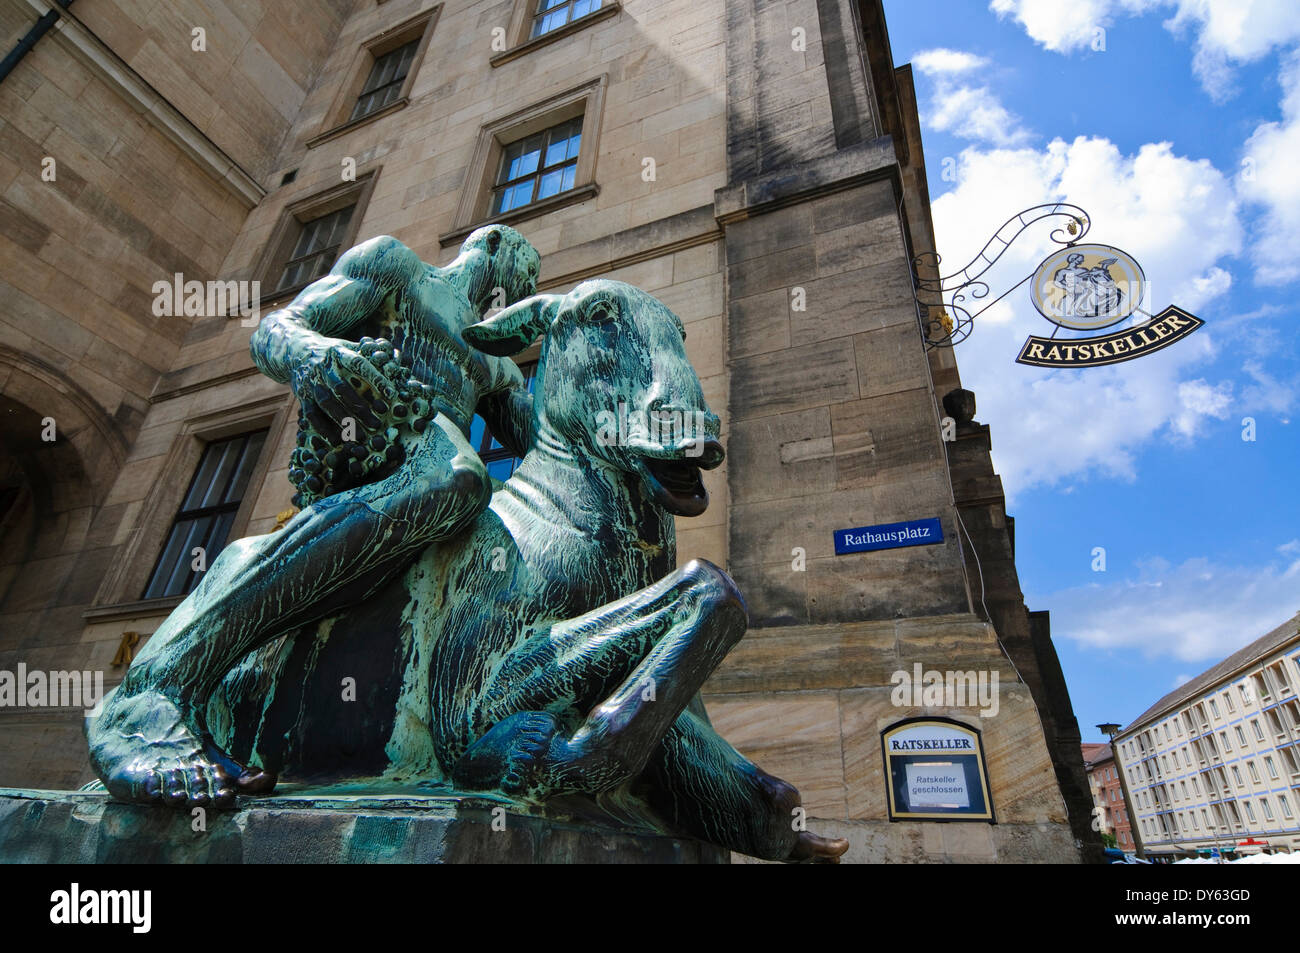 Nouvel hôtel de ville avec la sculpture de Bacchus à cheval sur un âne ivre par Georg Wrba, Dresde, Saxe, Allemagne Banque D'Images